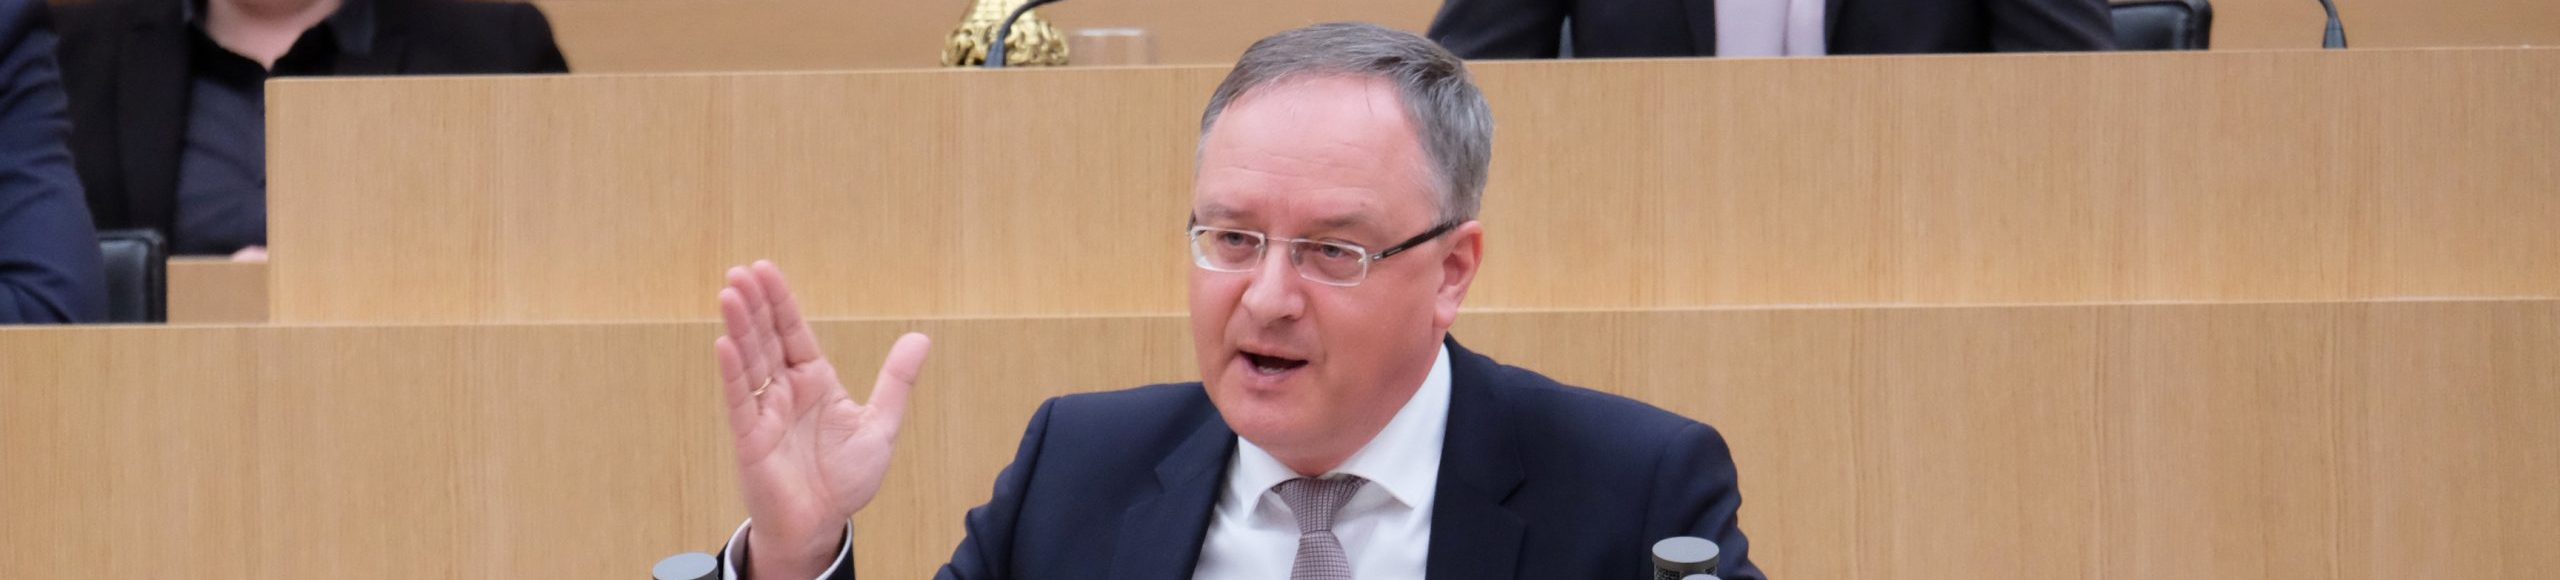 Andreas Stoch im Landtag von Baden-Württemberg zum Coronavirus